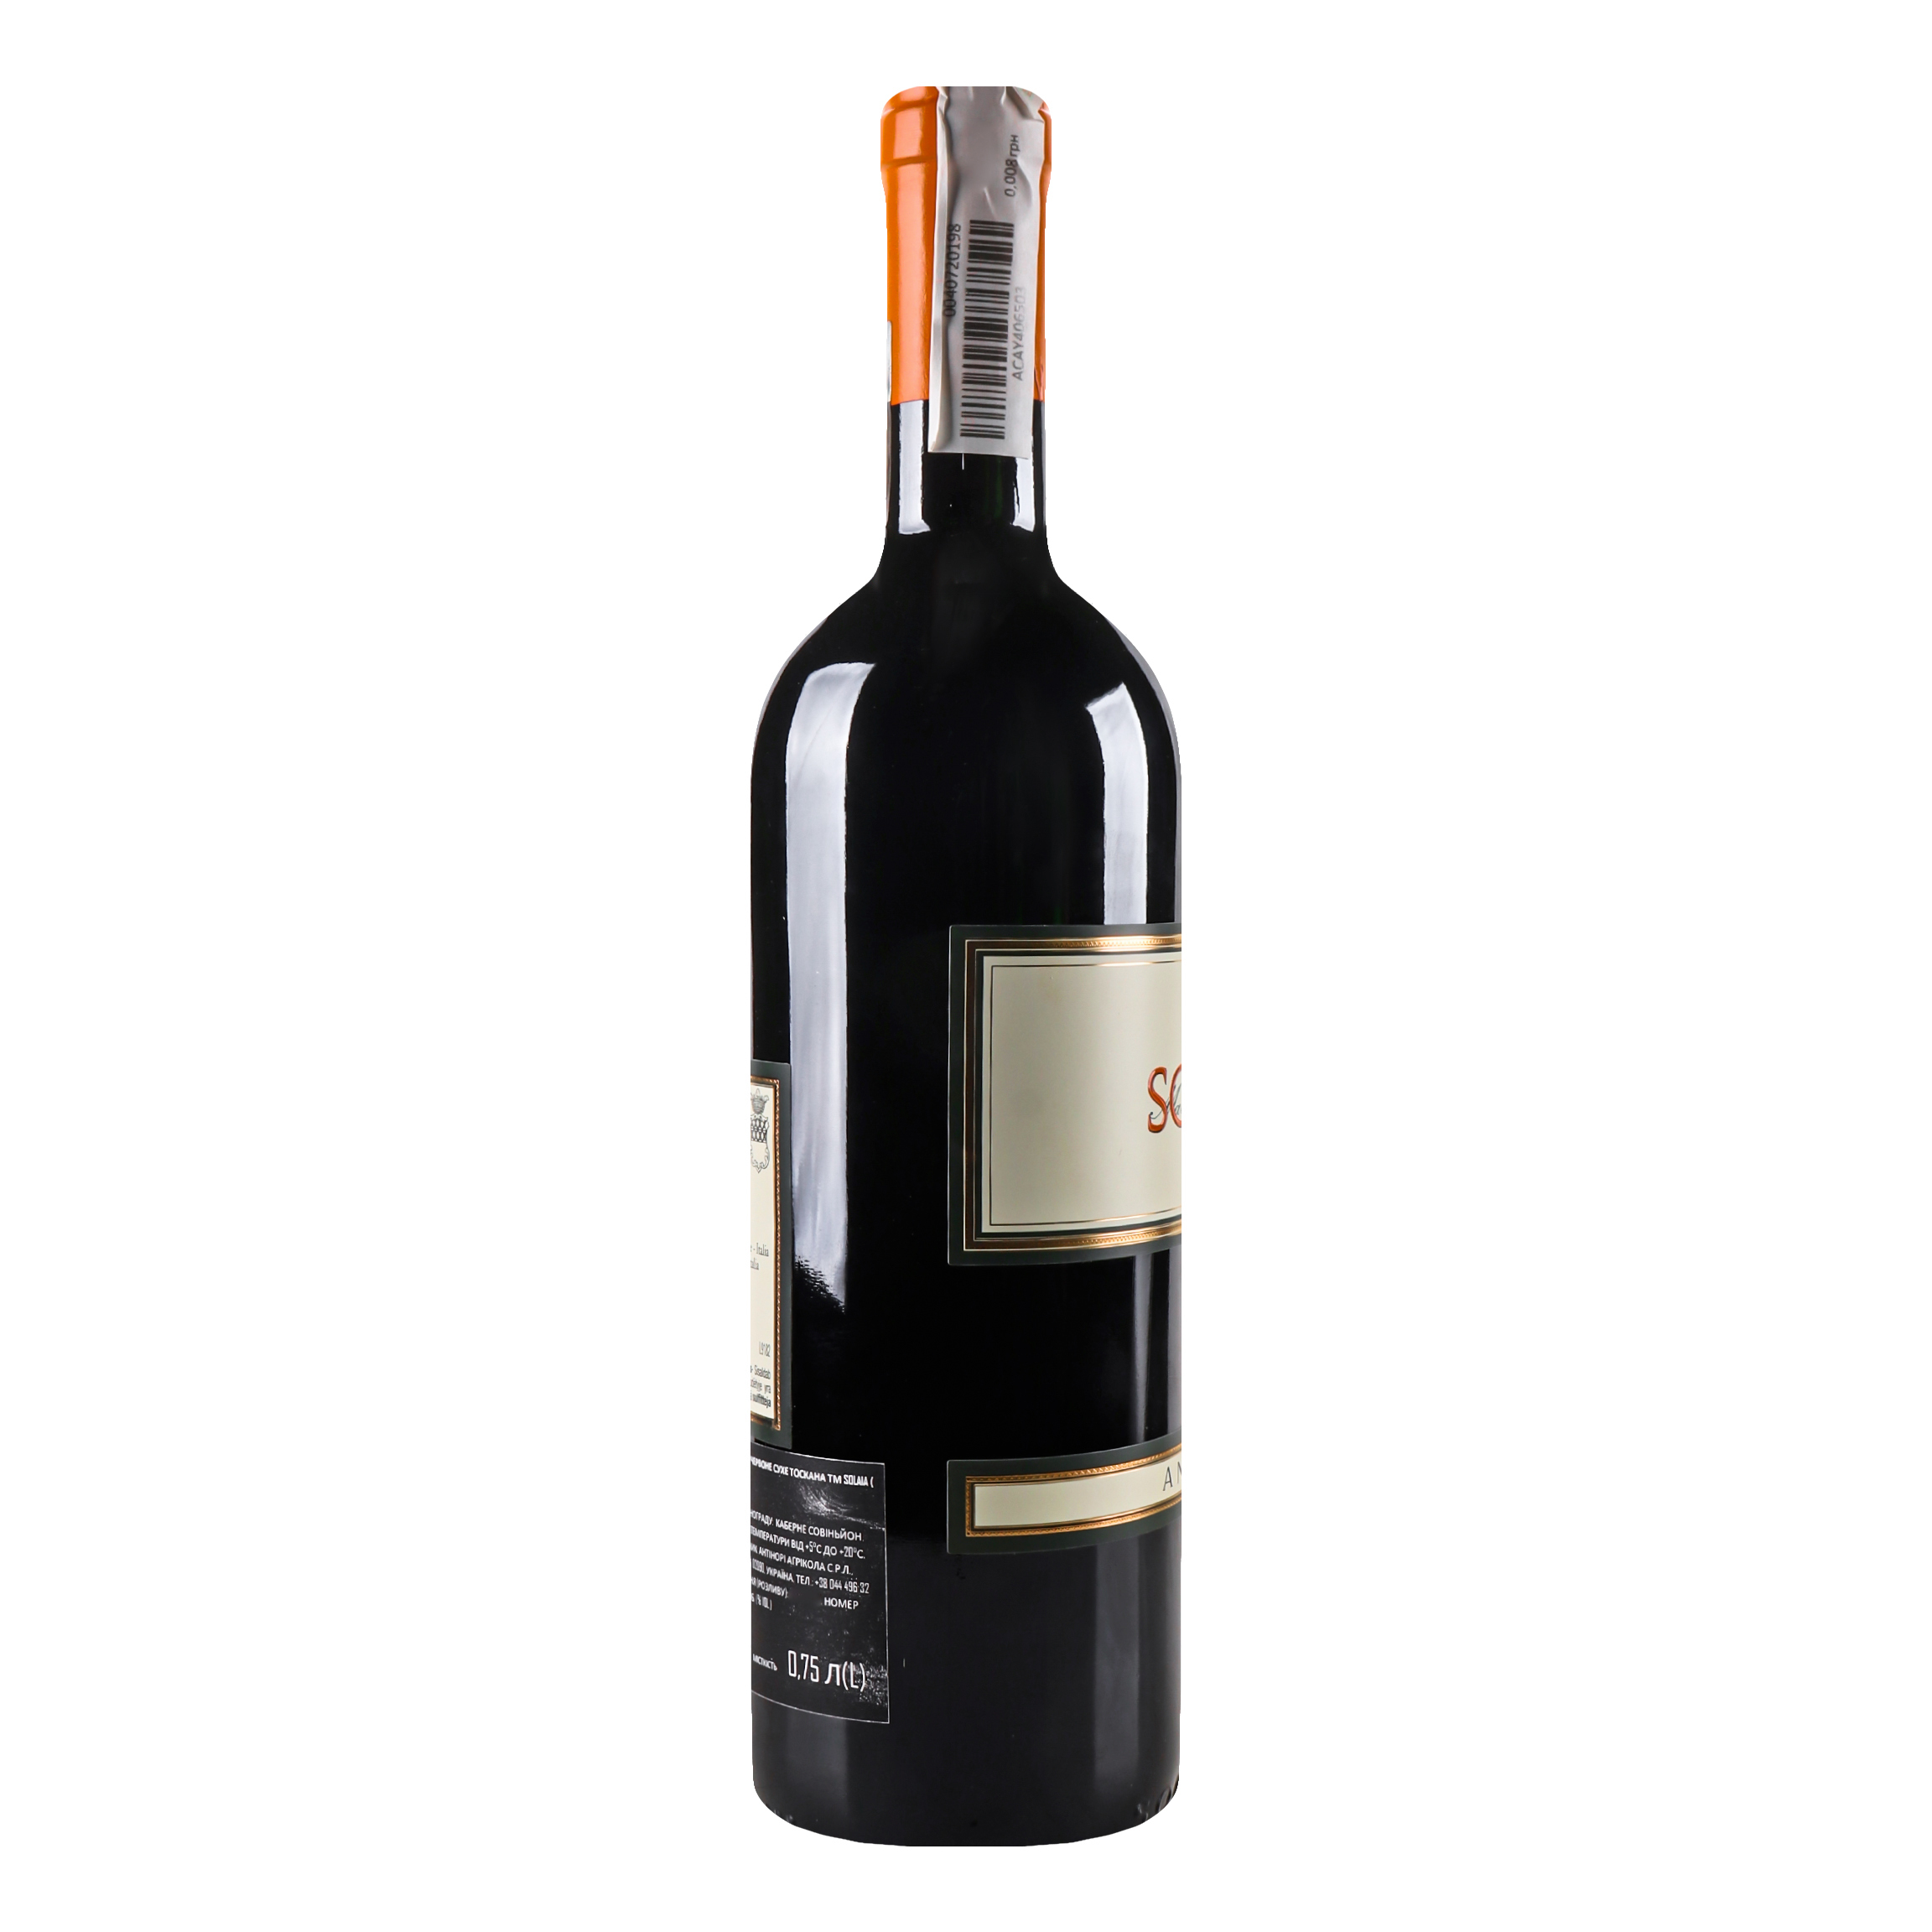 Вино Antinori Solaia 2017 IGT, красное, сухое, 14%, 0,75 л (868963) - фото 3